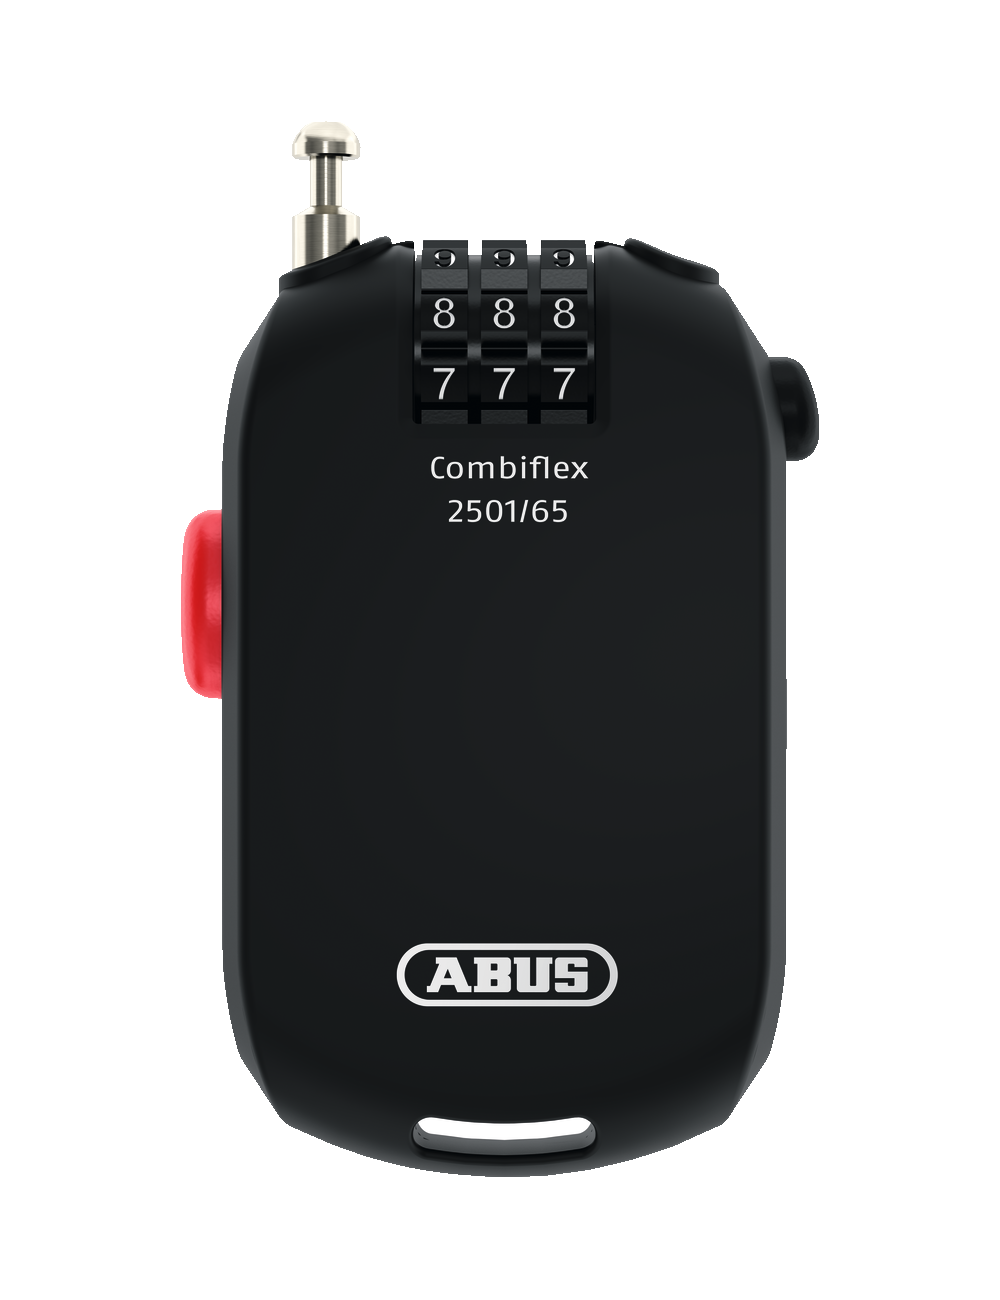 Câble à enroulement automatique à code ABUS-2501/65-COMBIFLEX - 1